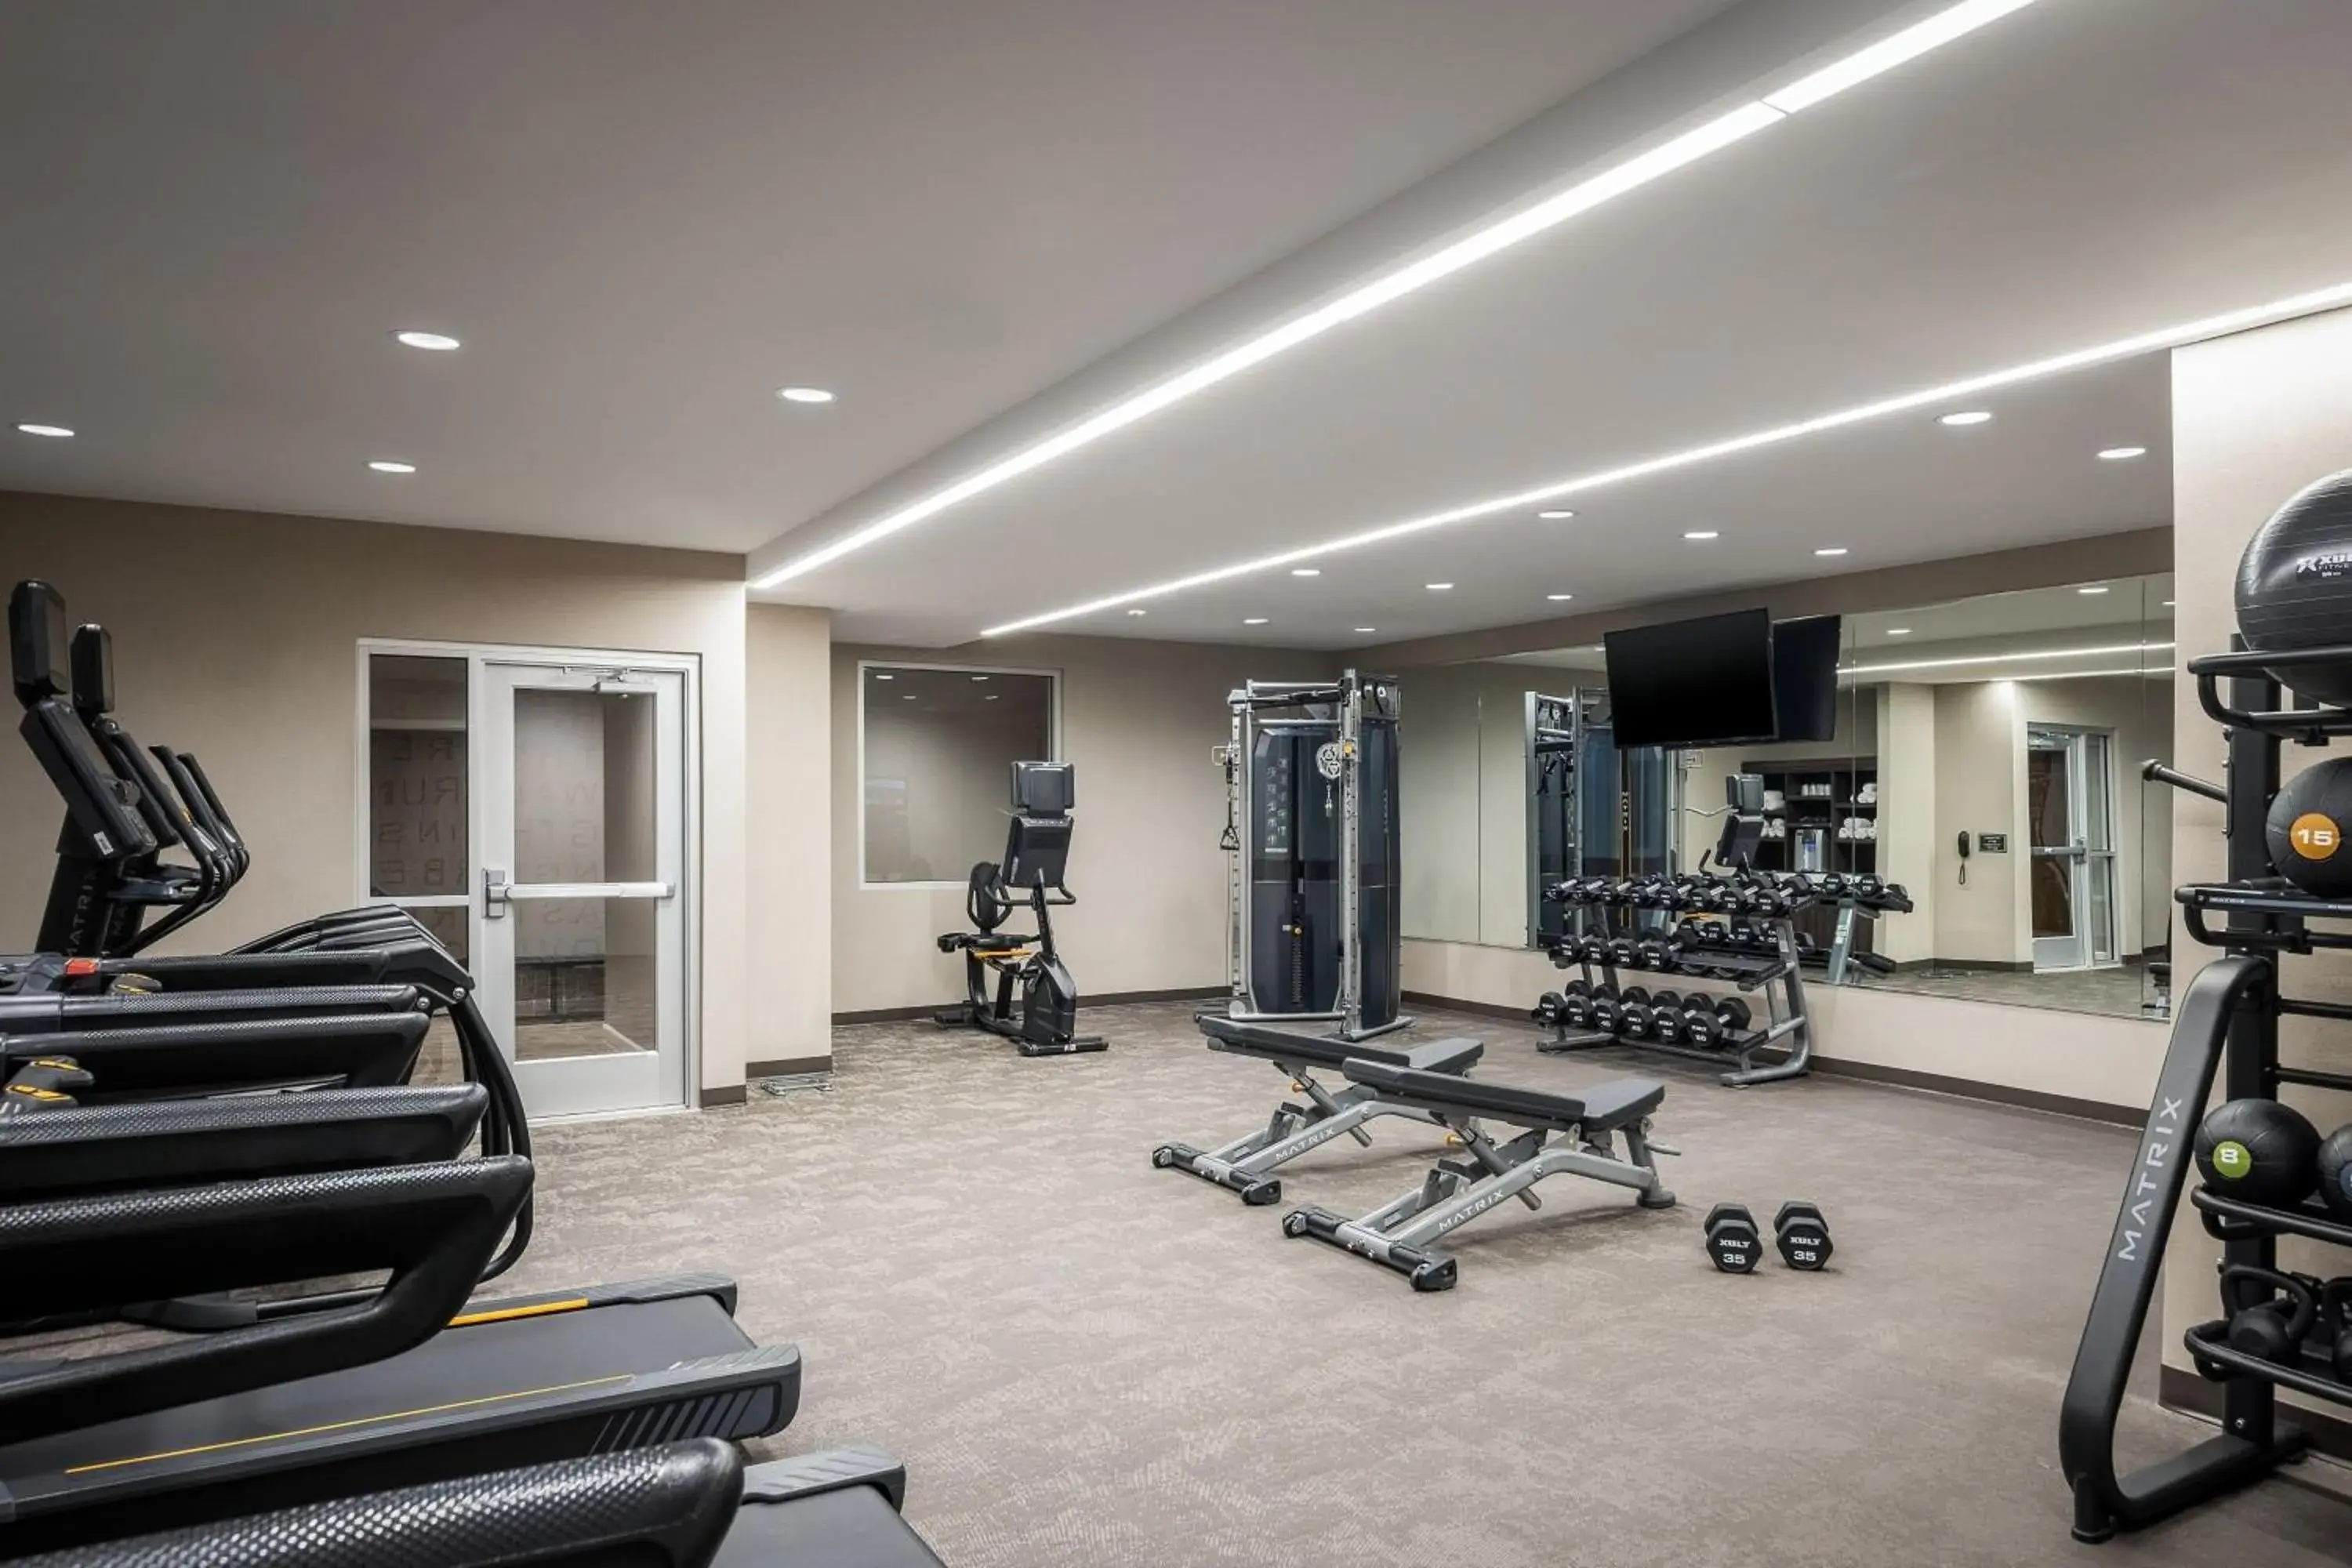 Fitness centre/facilities, Fitness Center/Facilities in Residence Inn by Marriott Denver Aurora